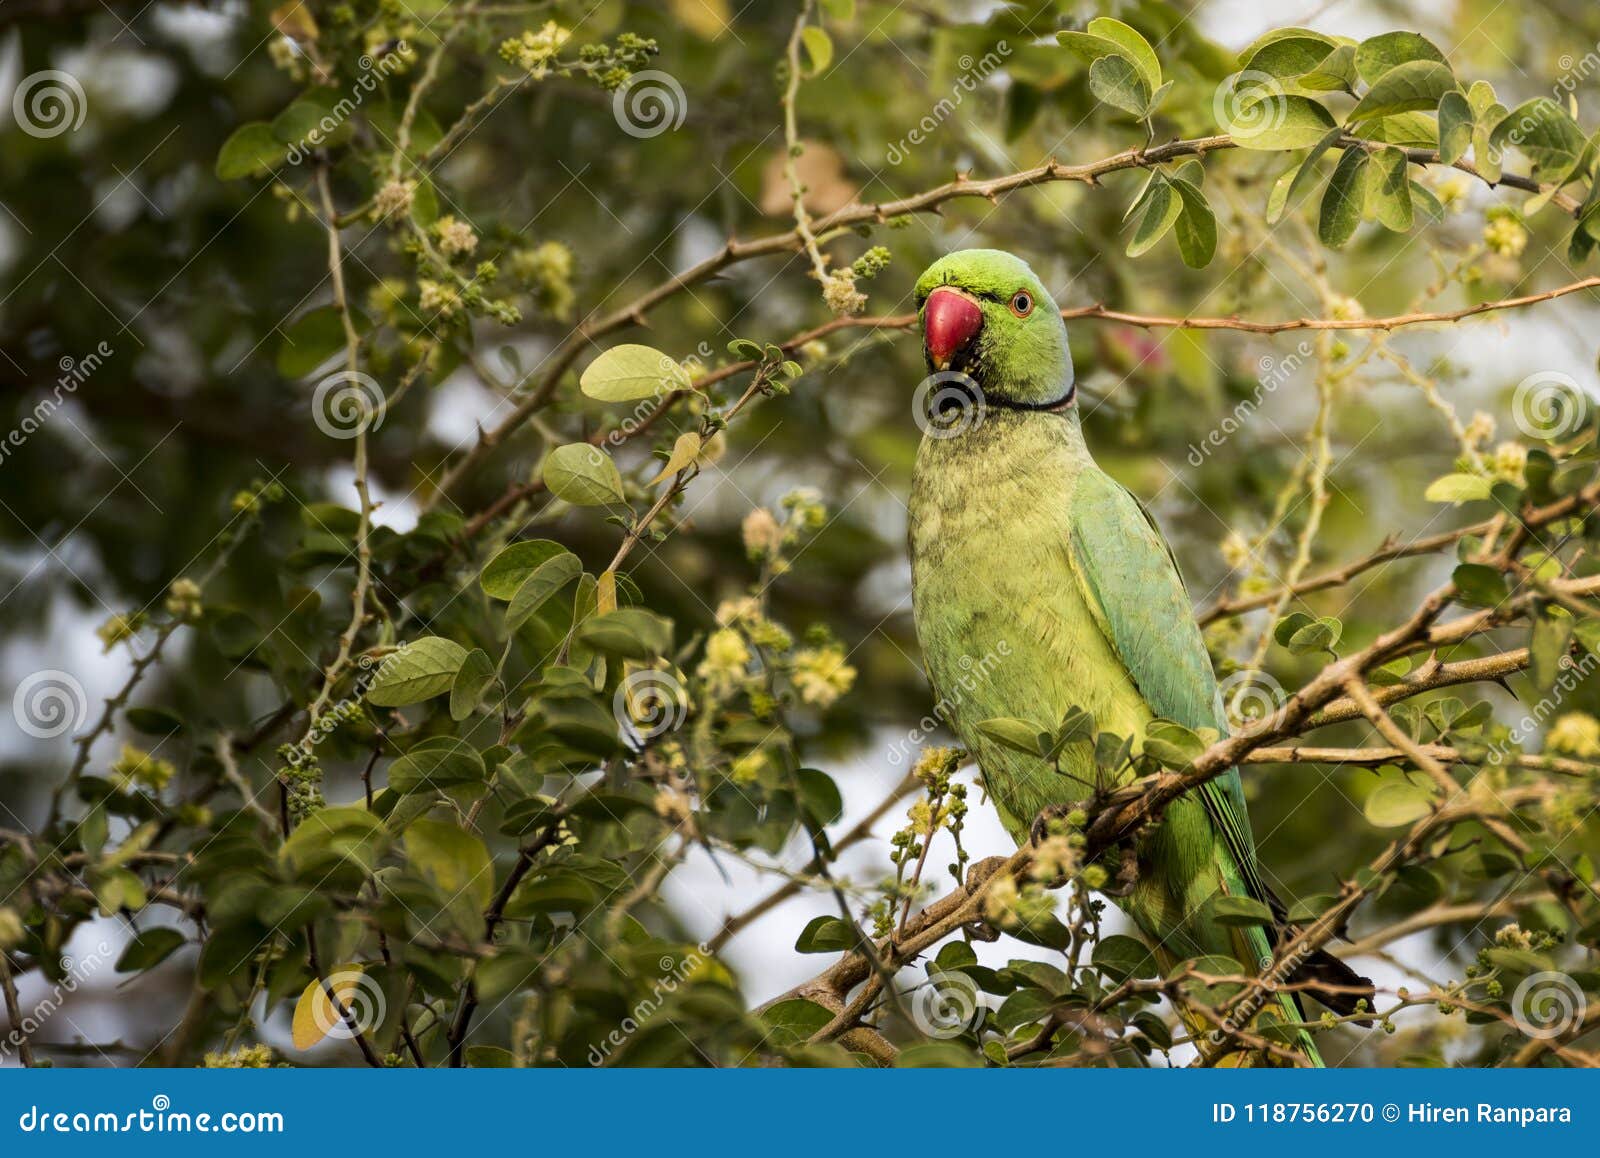 Rose-ringed Parakeet | The Rose-ringed Parakeet has establis… | Flickr